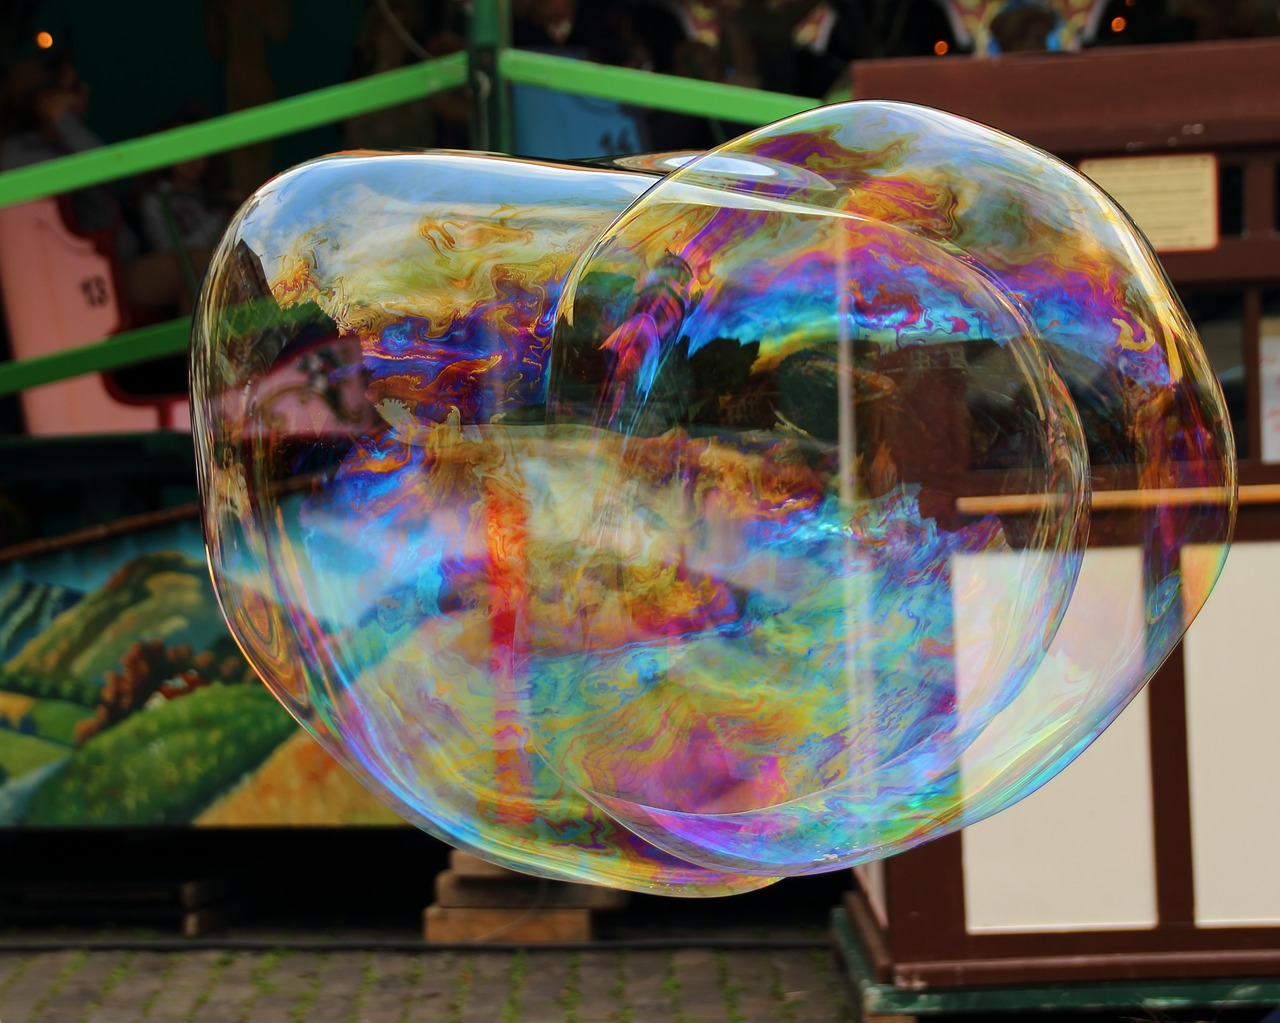 soap bubble soap bubbles giant bubble free photo